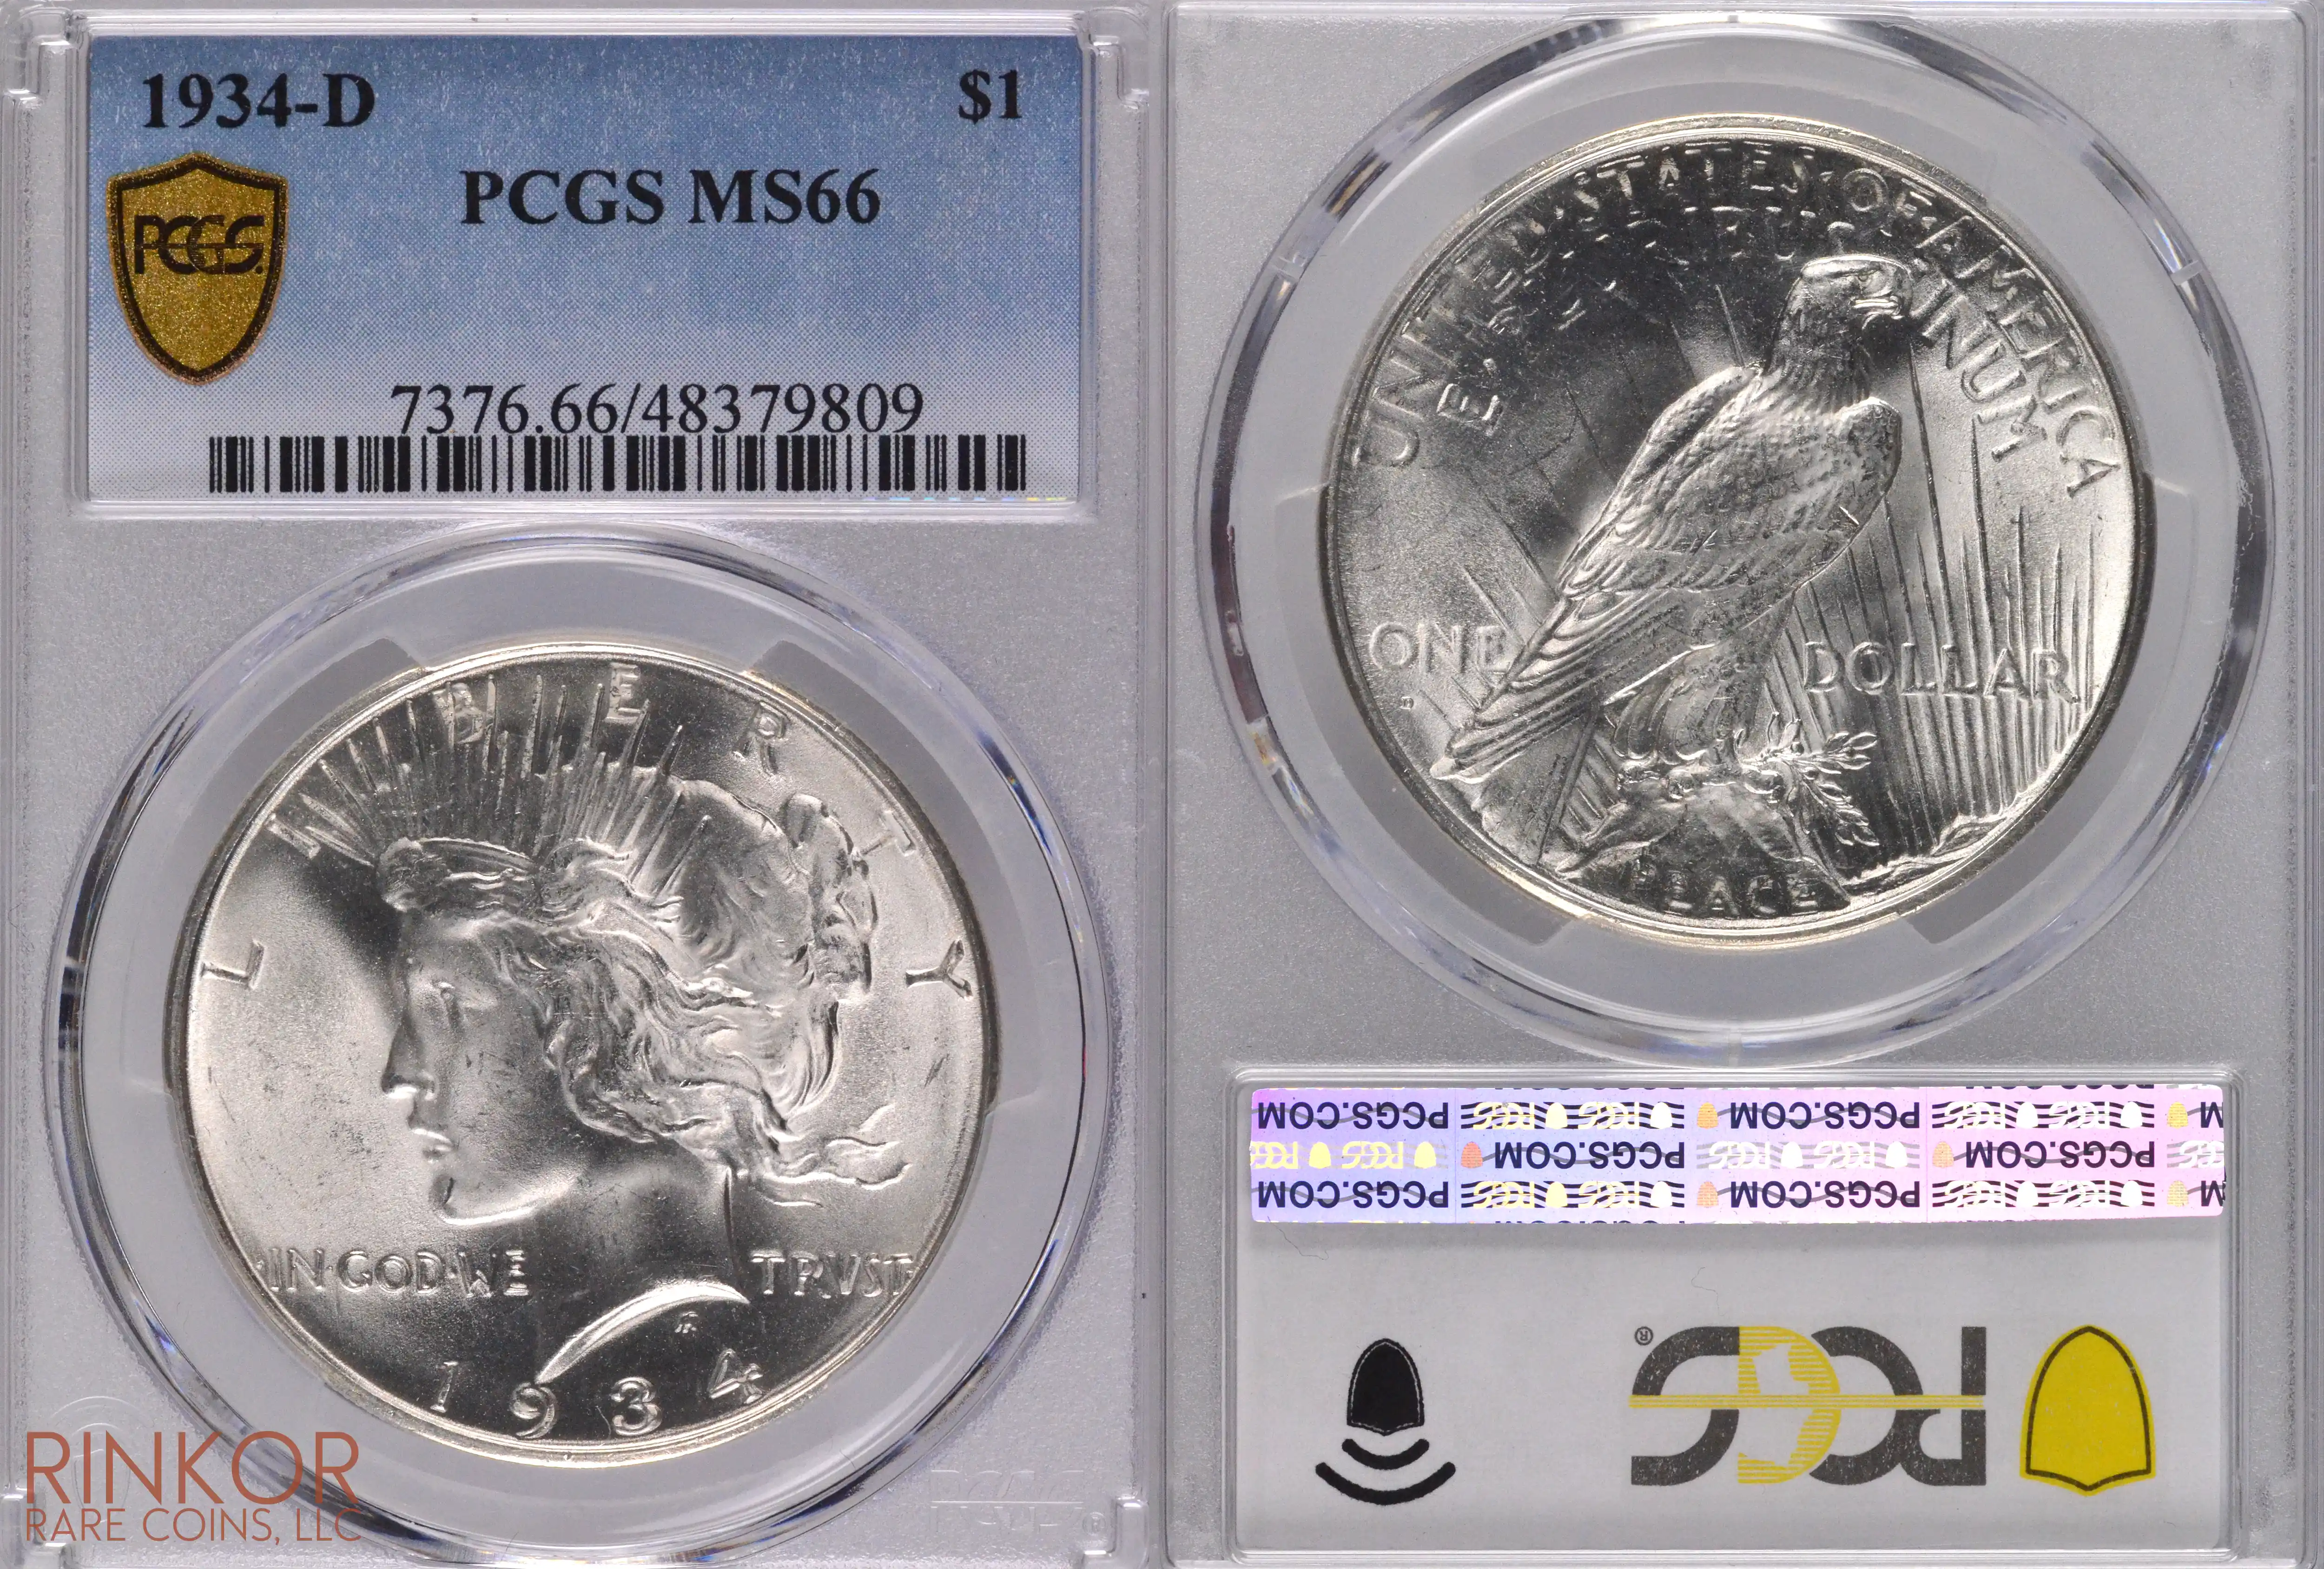 1934-D $1 PCGS MS 66